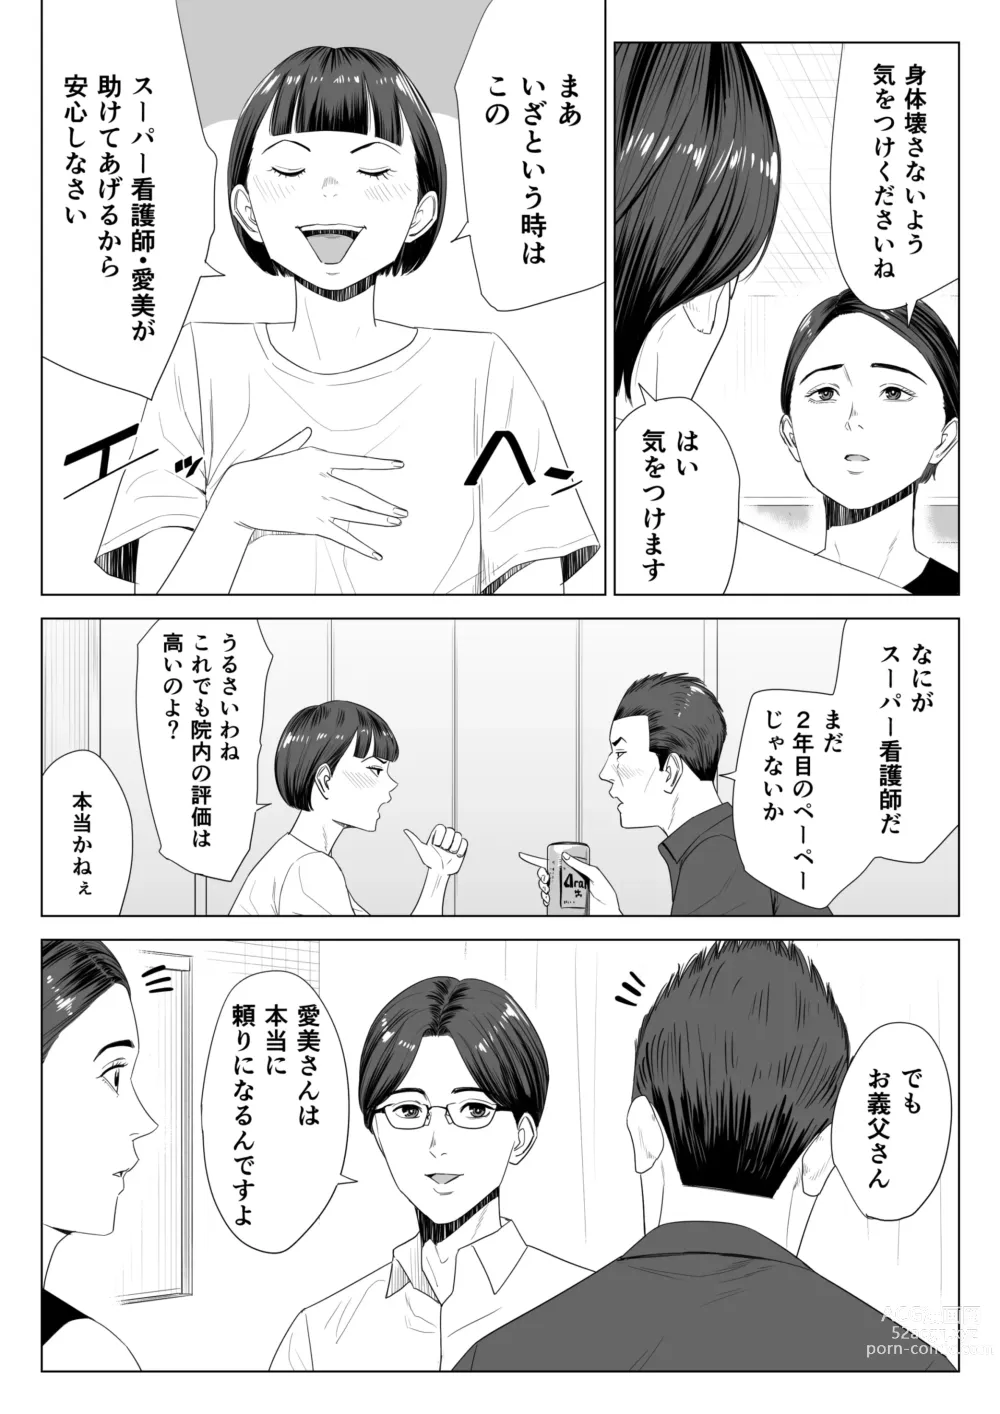 Page 5 of doujinshi Gibo no Tsukaeru Karada.